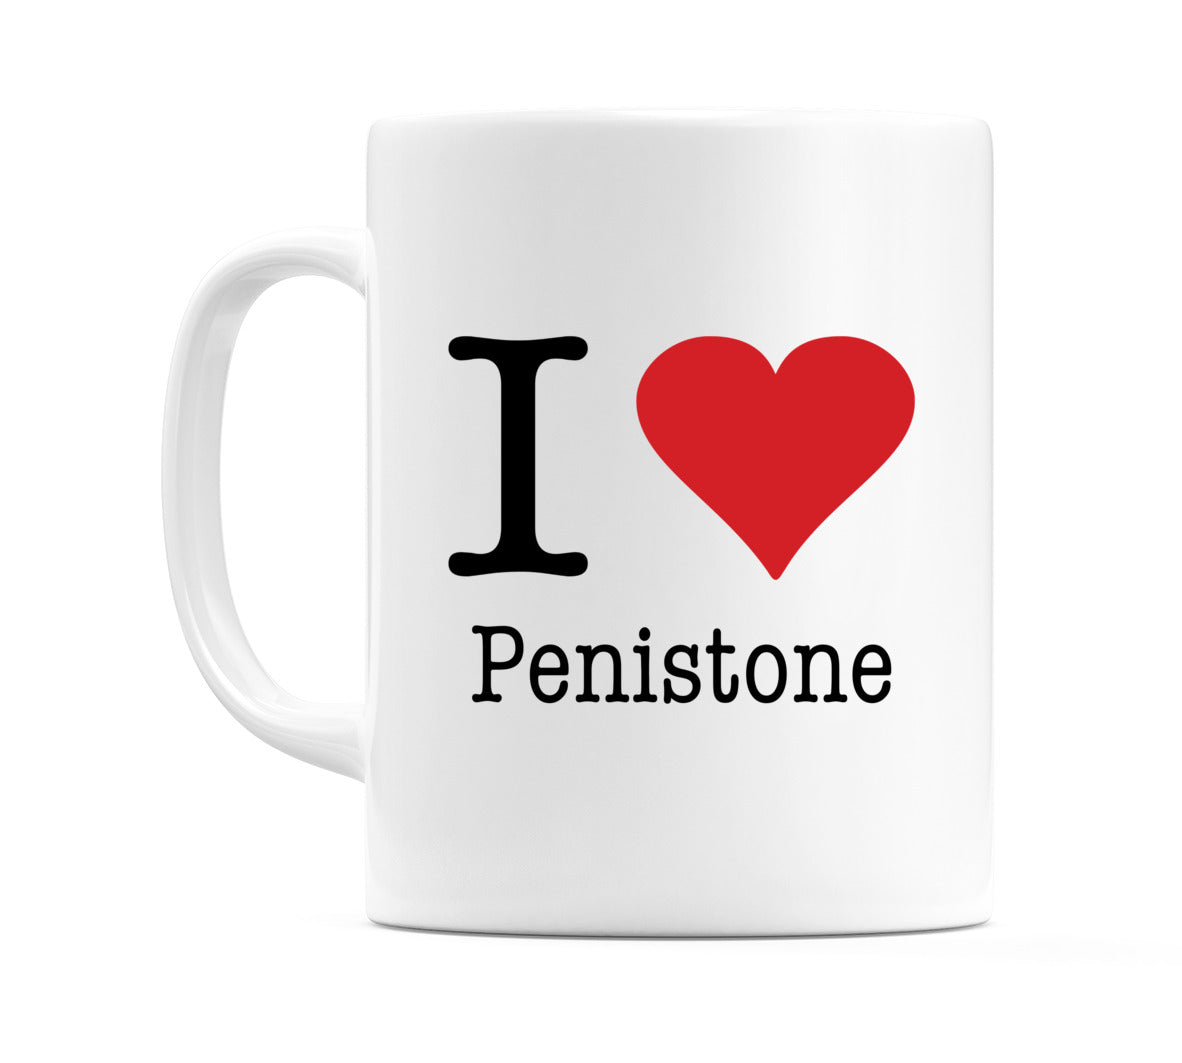 I Love Penistone Mug